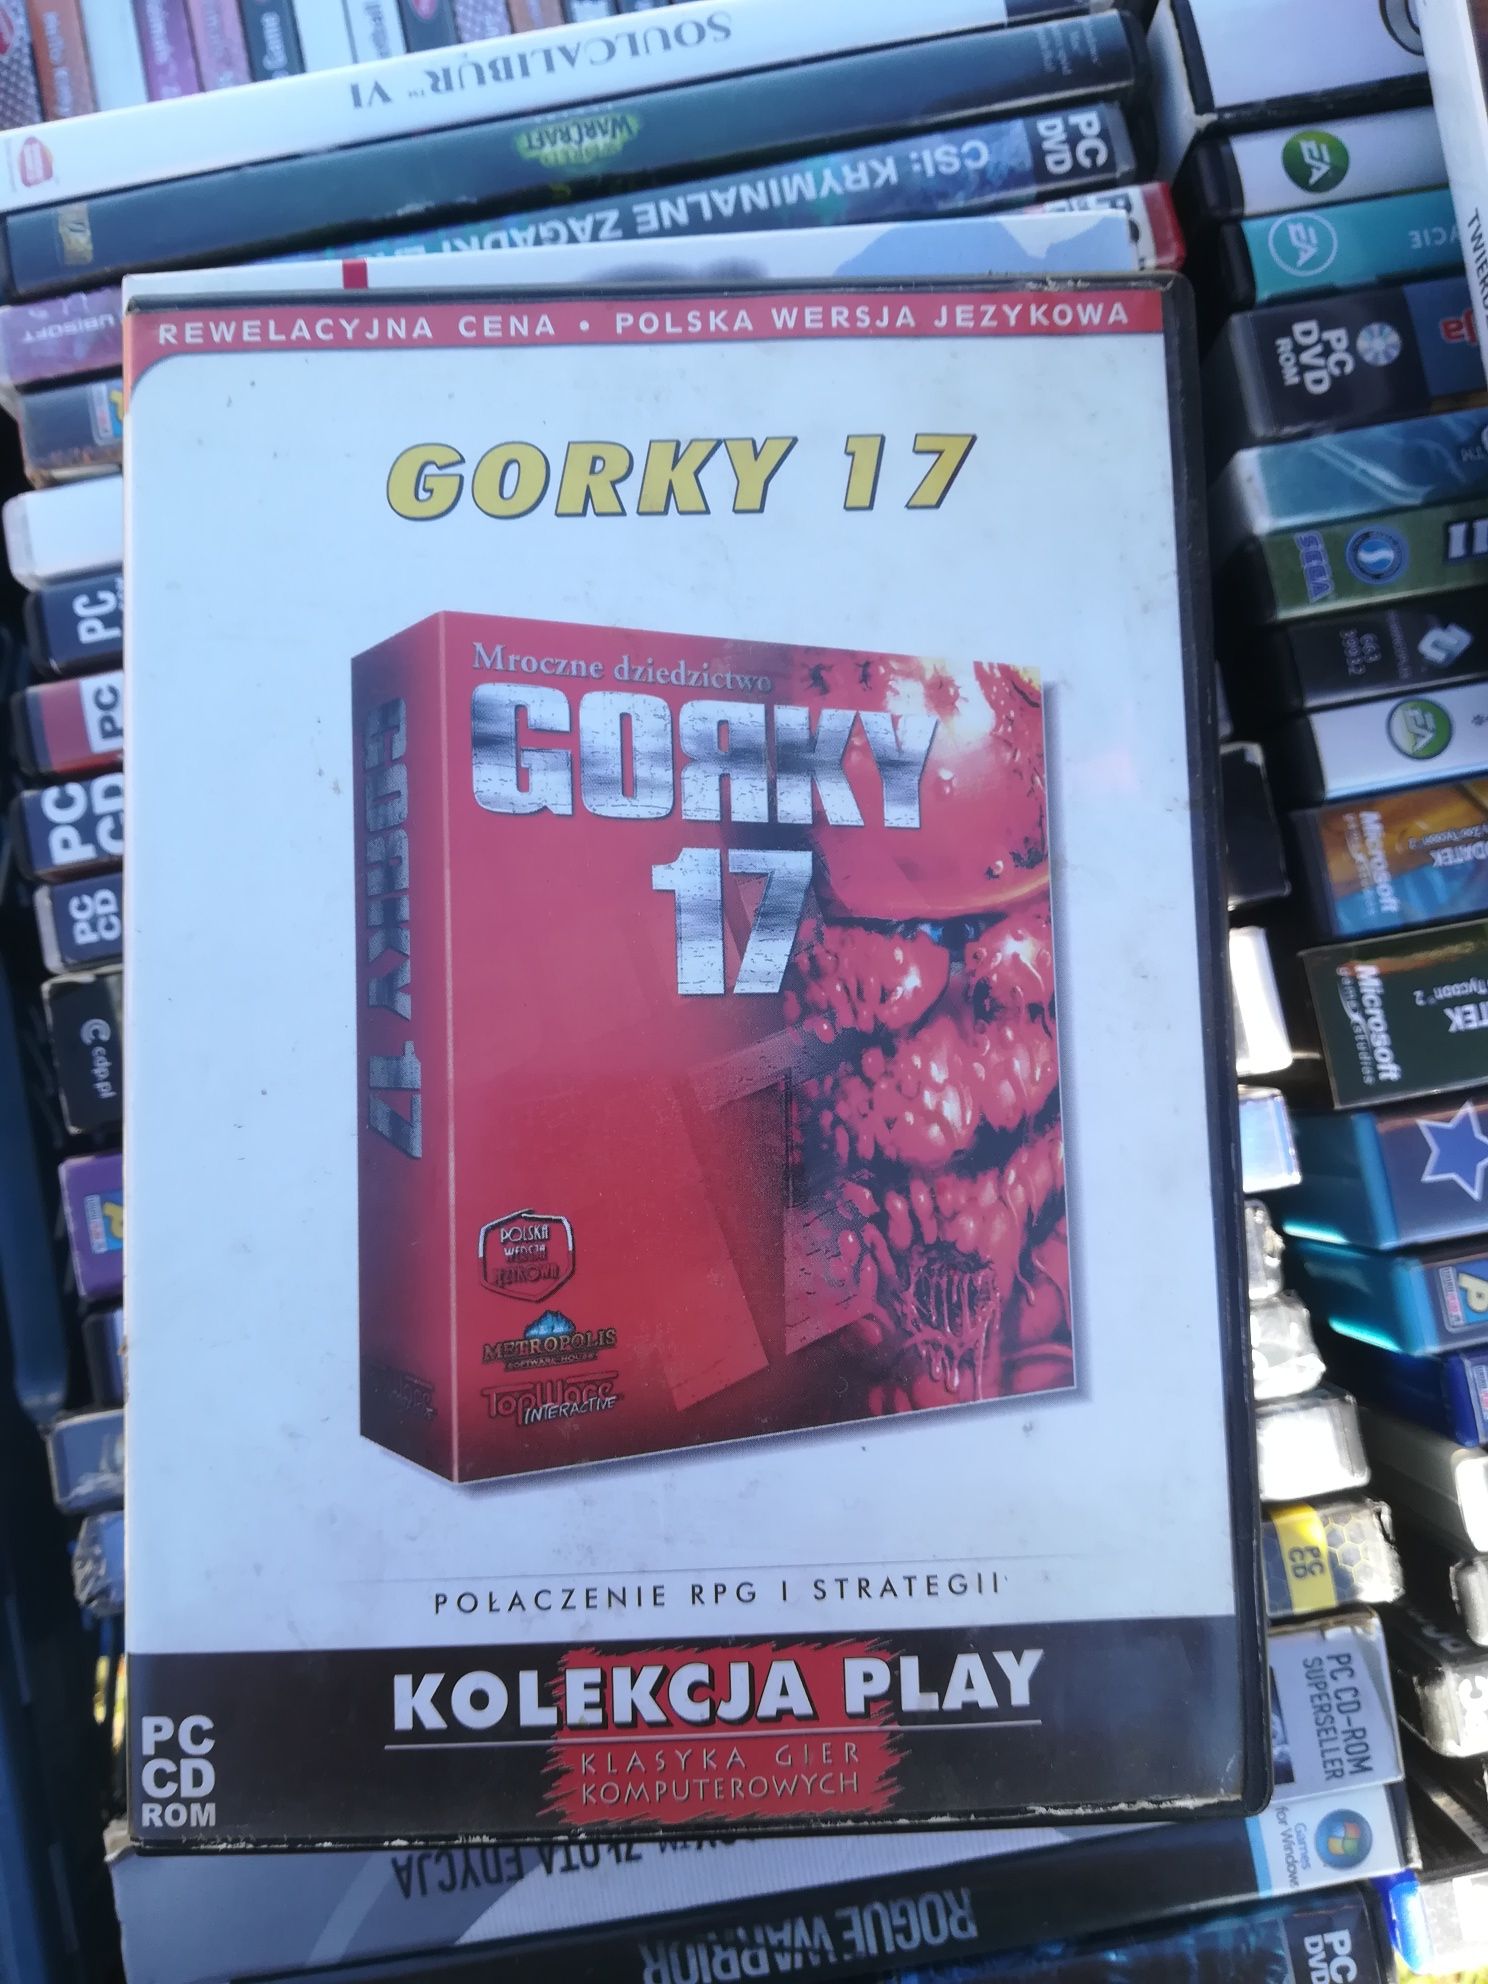 Gorky 17 pc gra cd